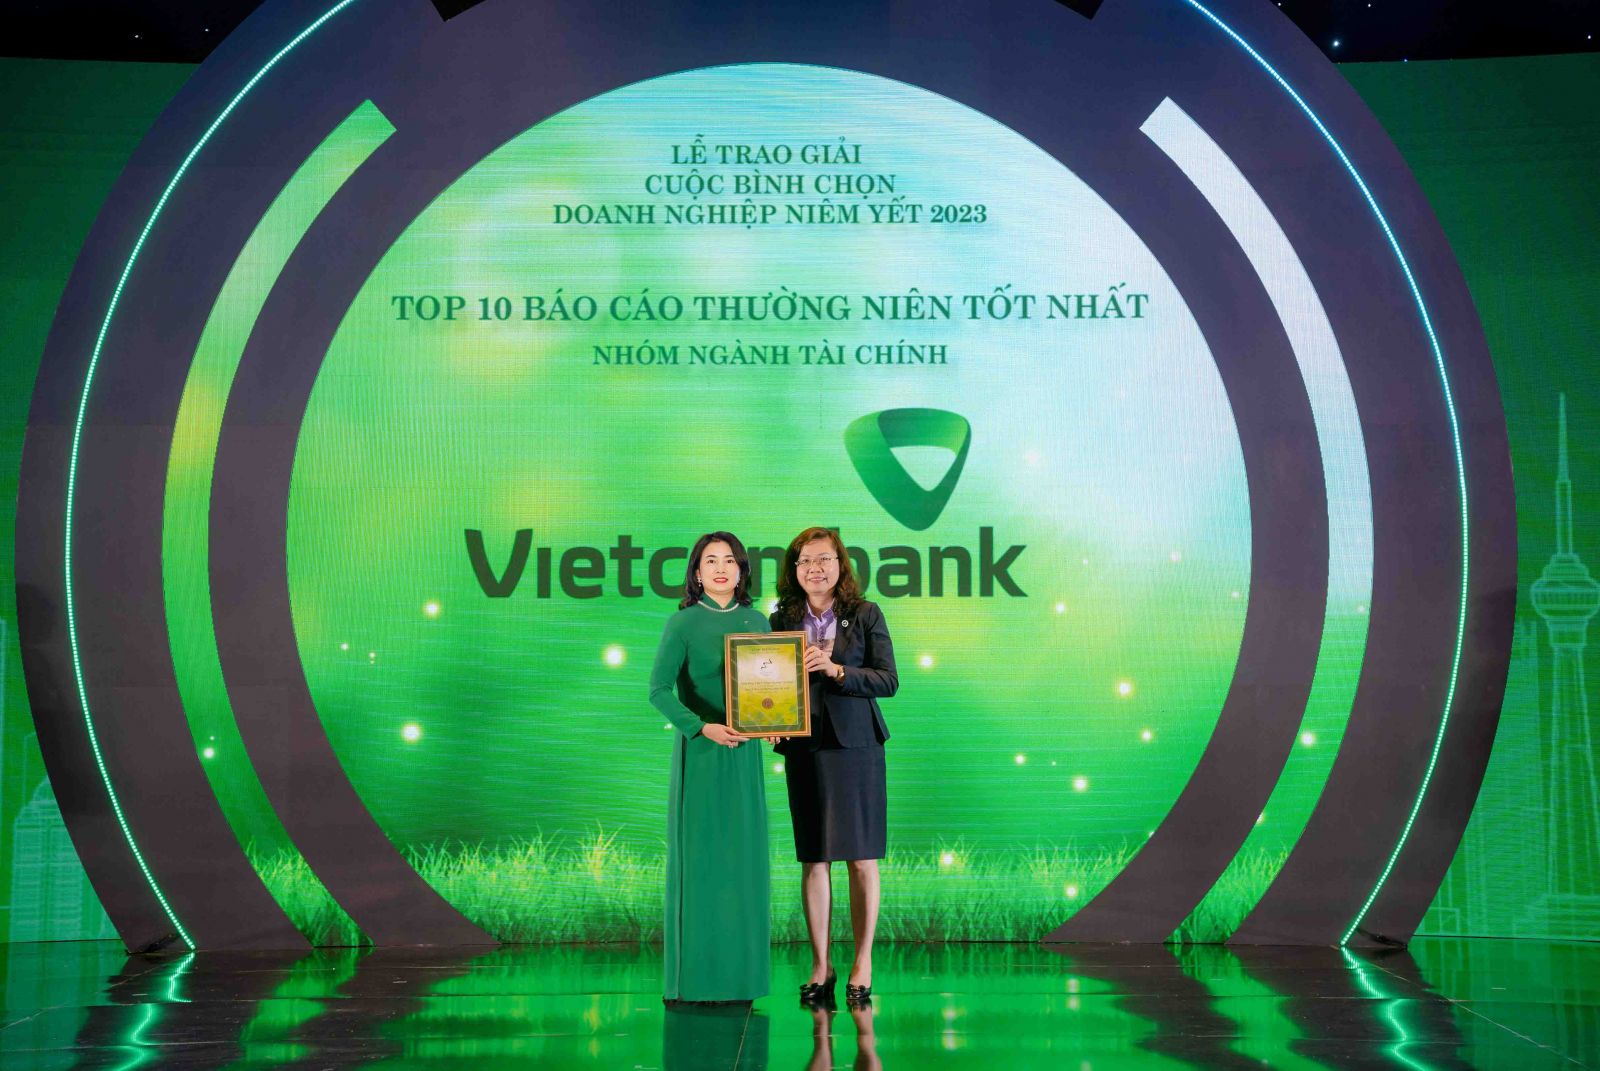 Đại diện Vietcombank, bà Bạch Thị Thanh Hà - Trưởng phòng Quan hệ công chúng (bên trái) nhận giải thưởng từ BTC